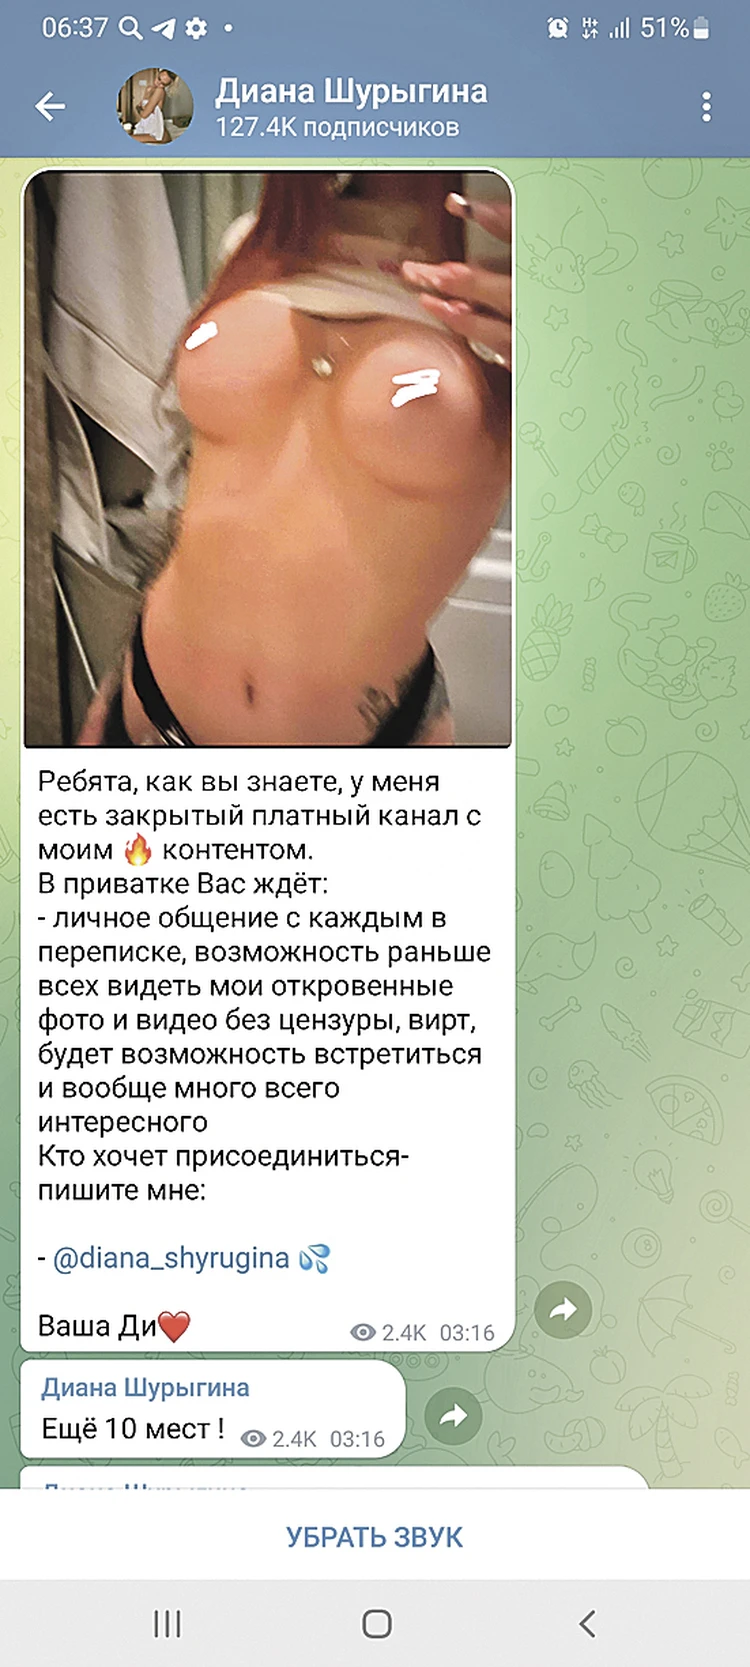 Изнасилованная в 16 лет Диана Шурыгина зарабатывает на виртуальном сексе -  KP.RU